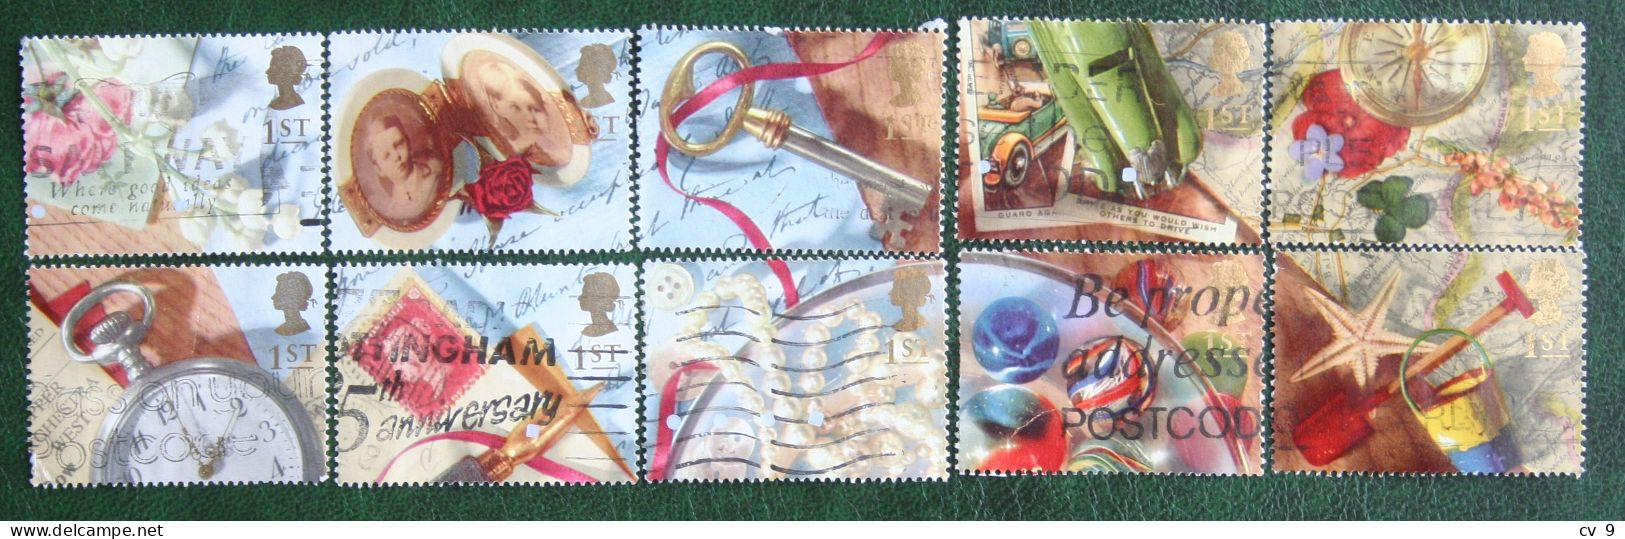 Greetings Booklet Stamps Memories (Mi 1377-1386) 1992 Used Gebruikt Oblitere ENGLAND GRANDE-BRETAGNE GB GREAT BRITAIN - Gebraucht